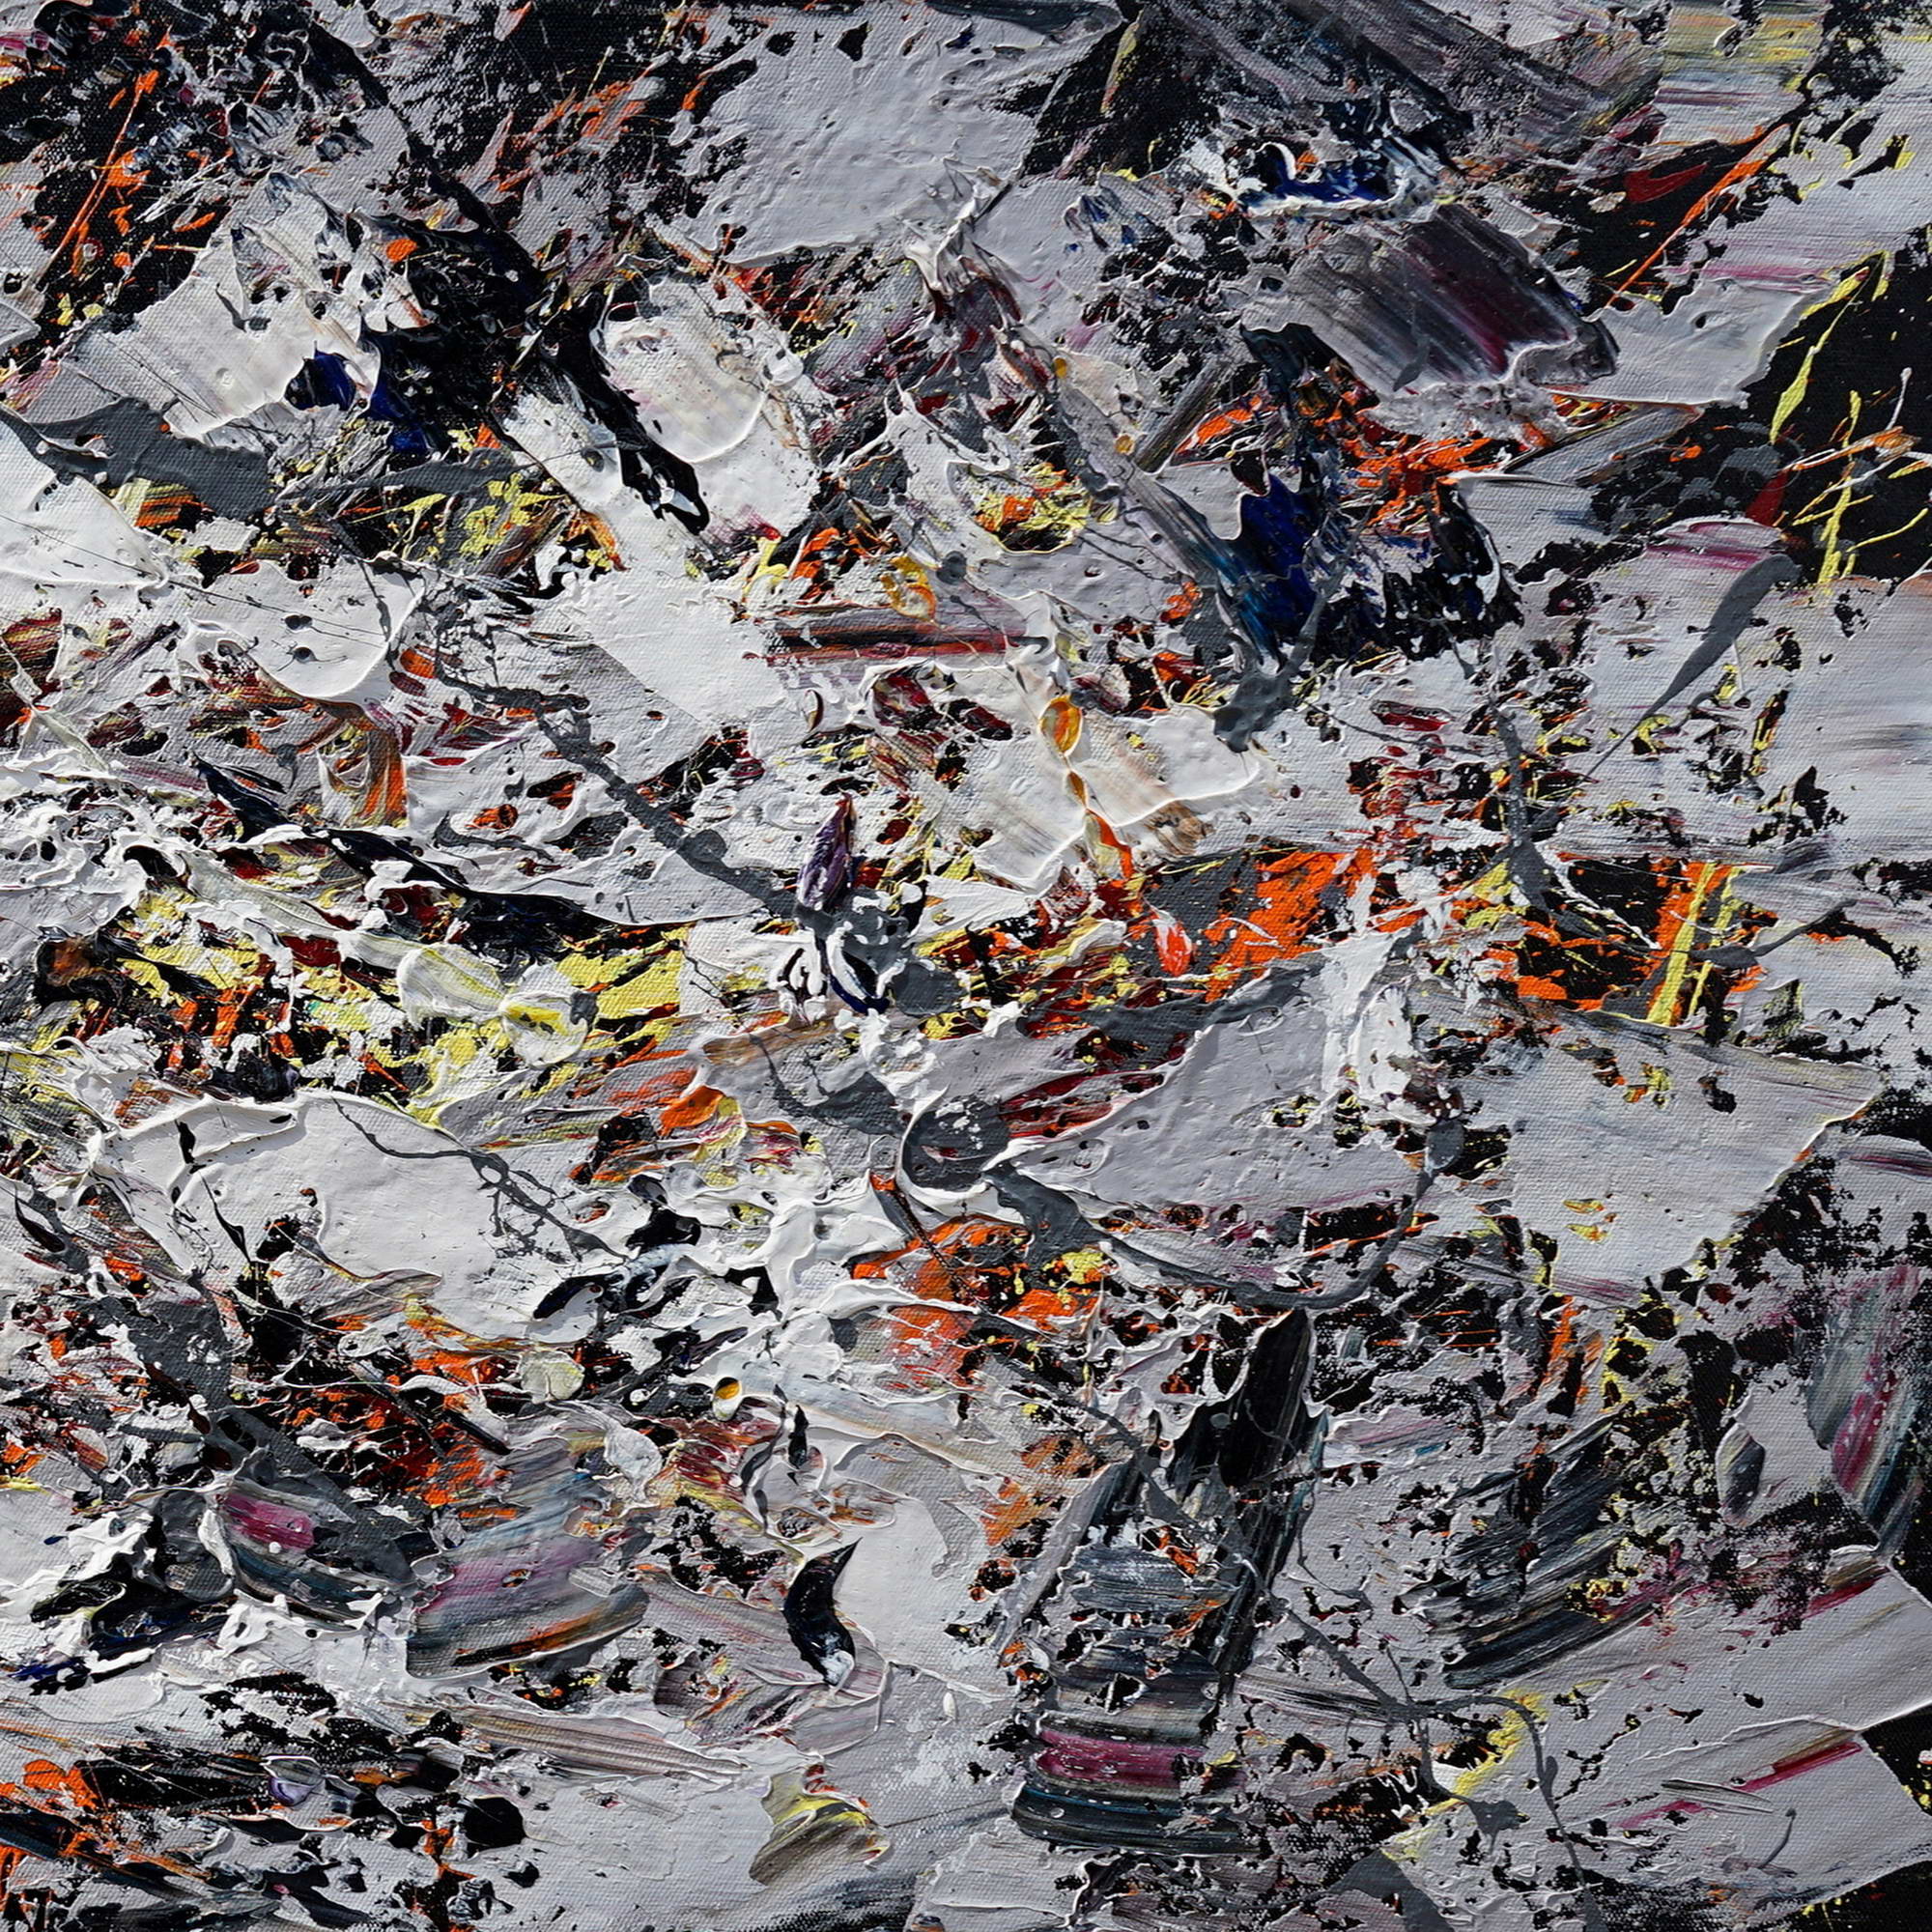 Dipinto a mano Intreccio di Colori stile Pollock 75x150cm